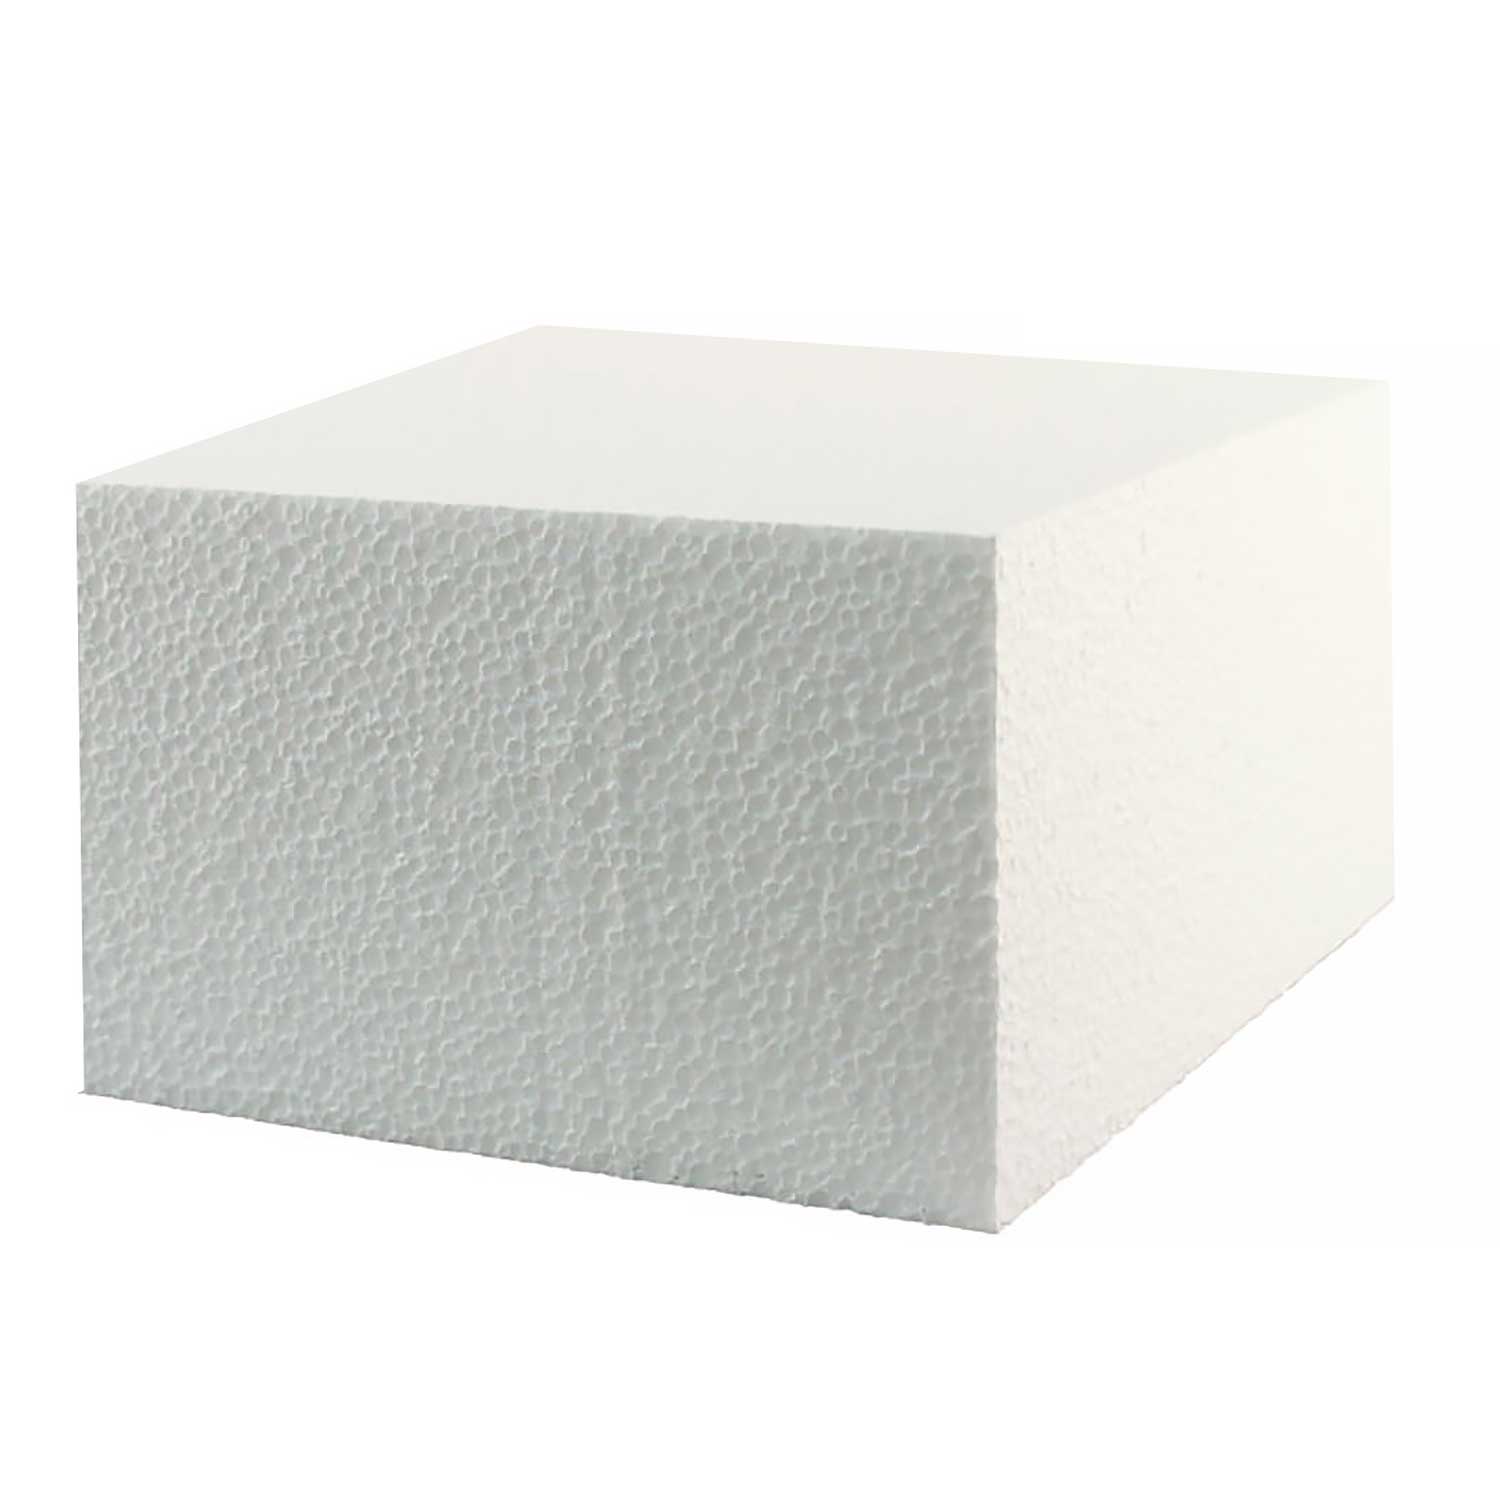 5" x 5" Square Styrofoam Cake Dummy